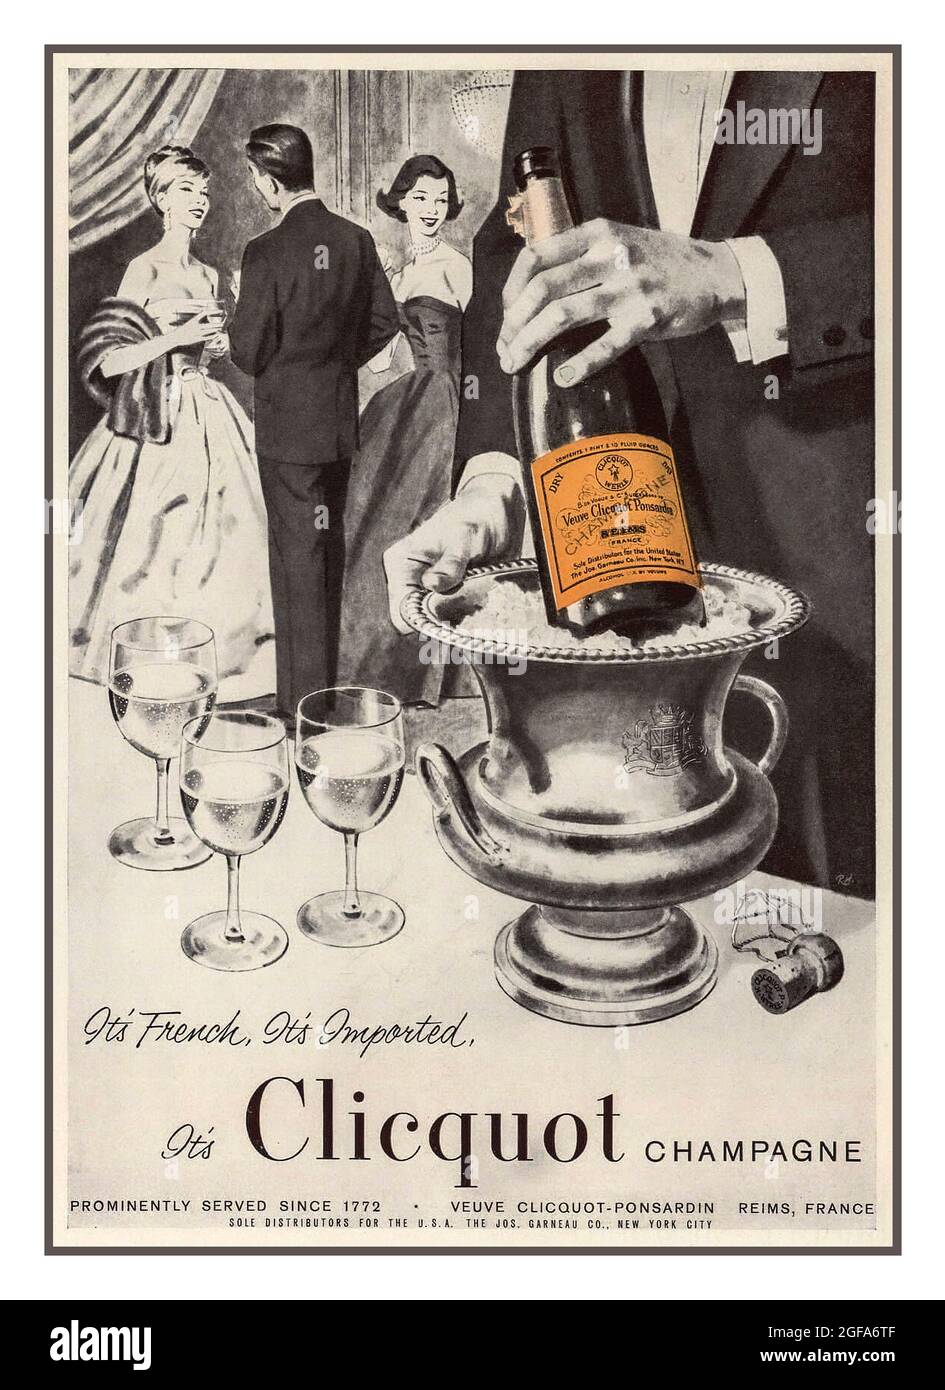 1957 Veuve Clicquot Brut Champagne 1949 bottle photo vintage print ad